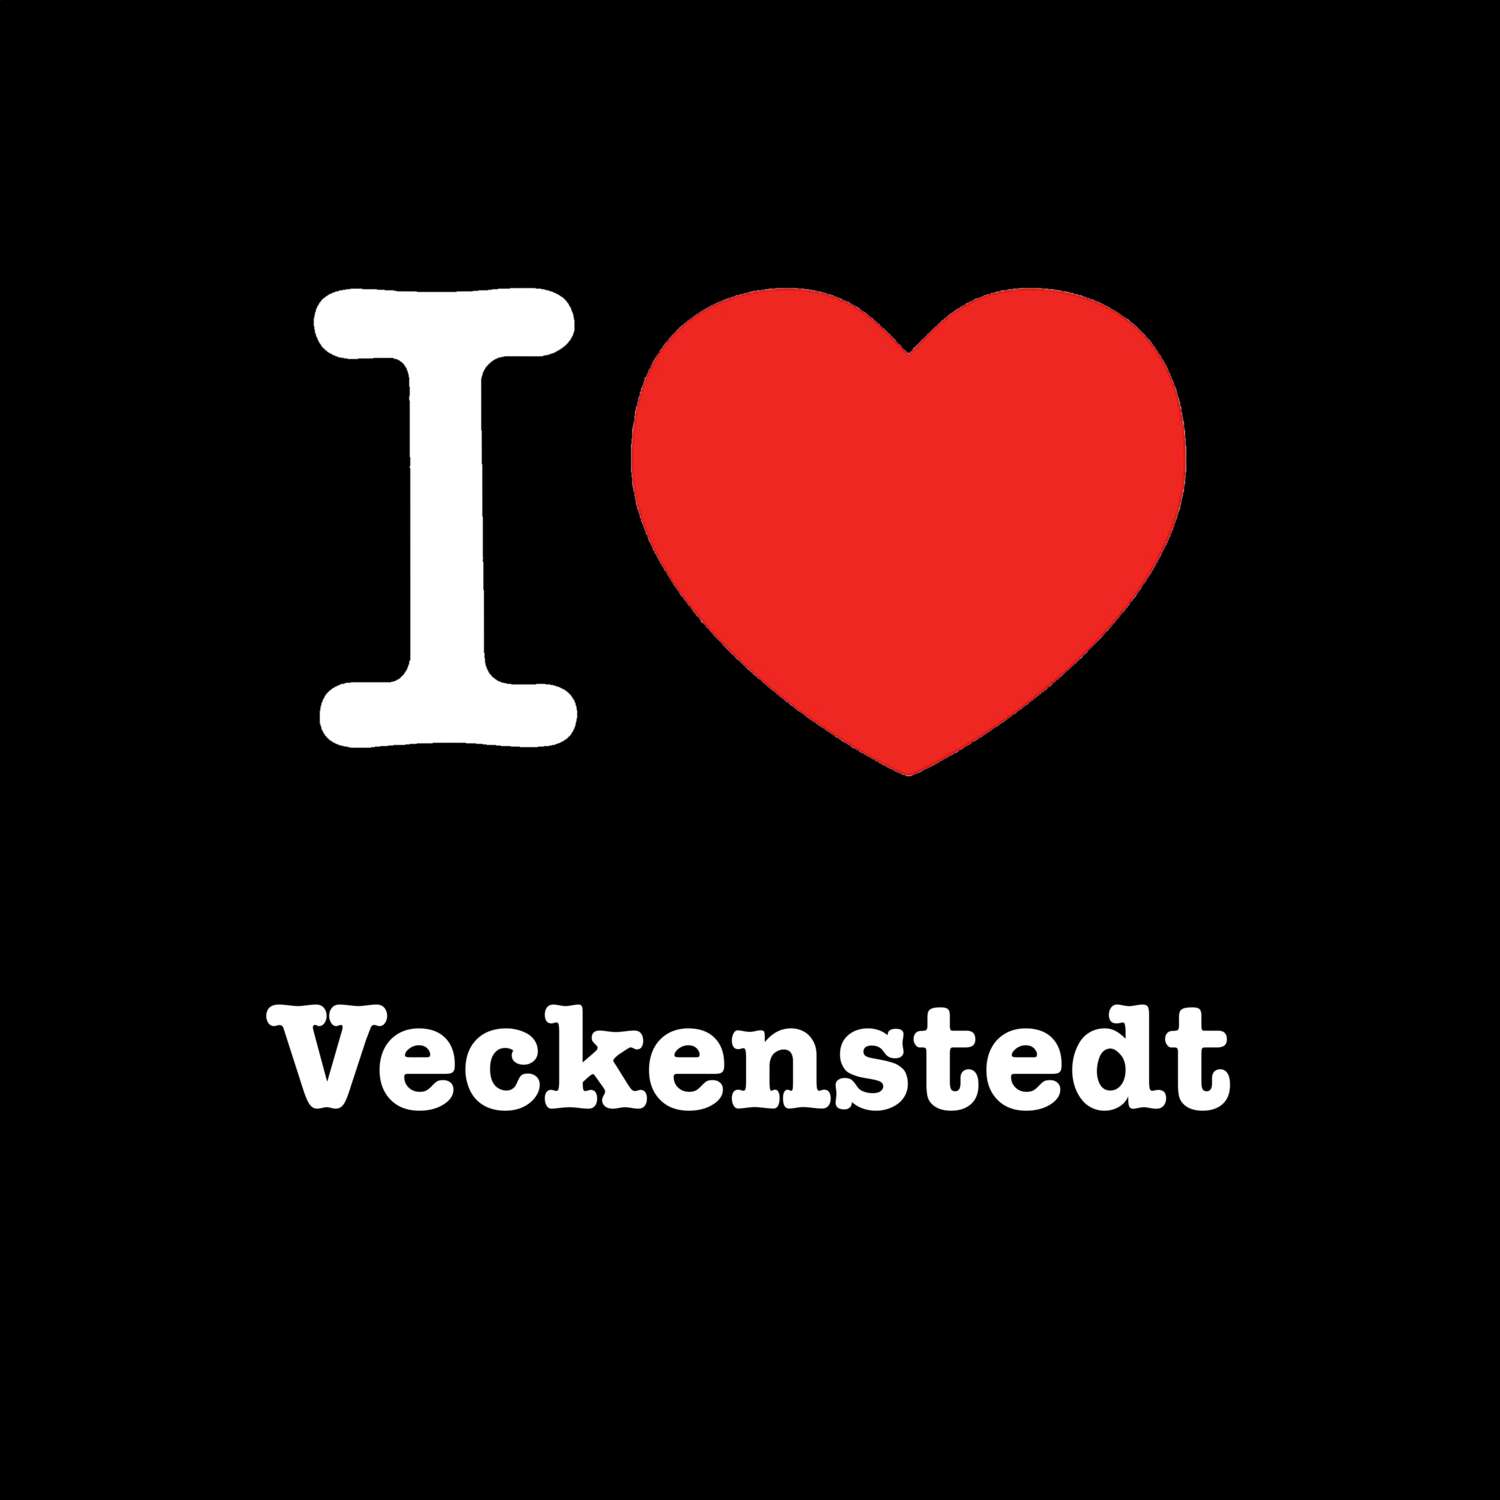 Veckenstedt T-Shirt »I love«